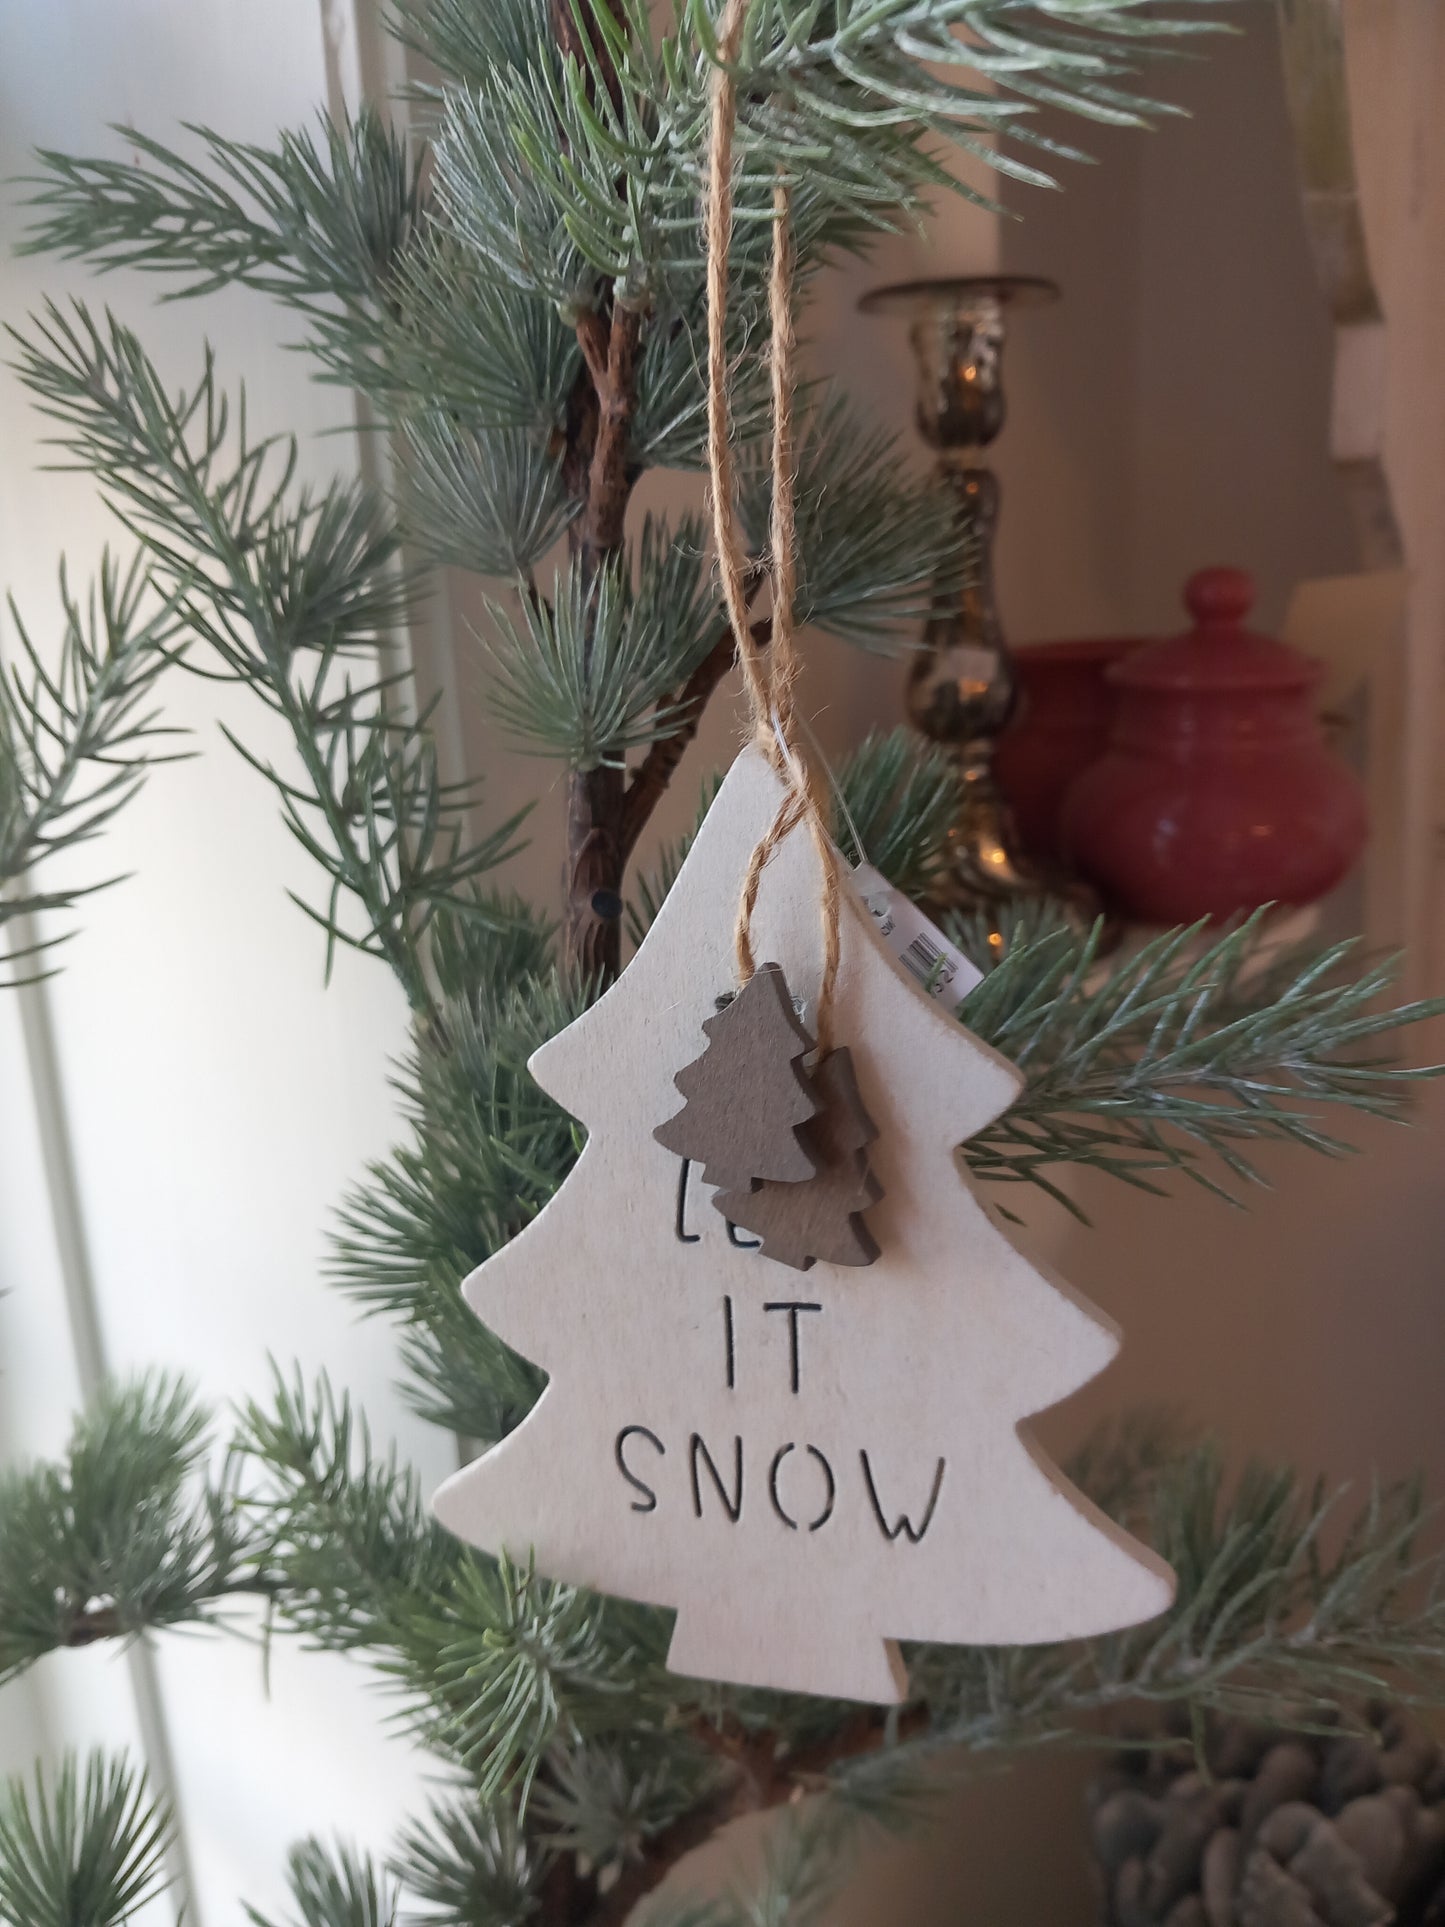 Træ juletræ, let it snow